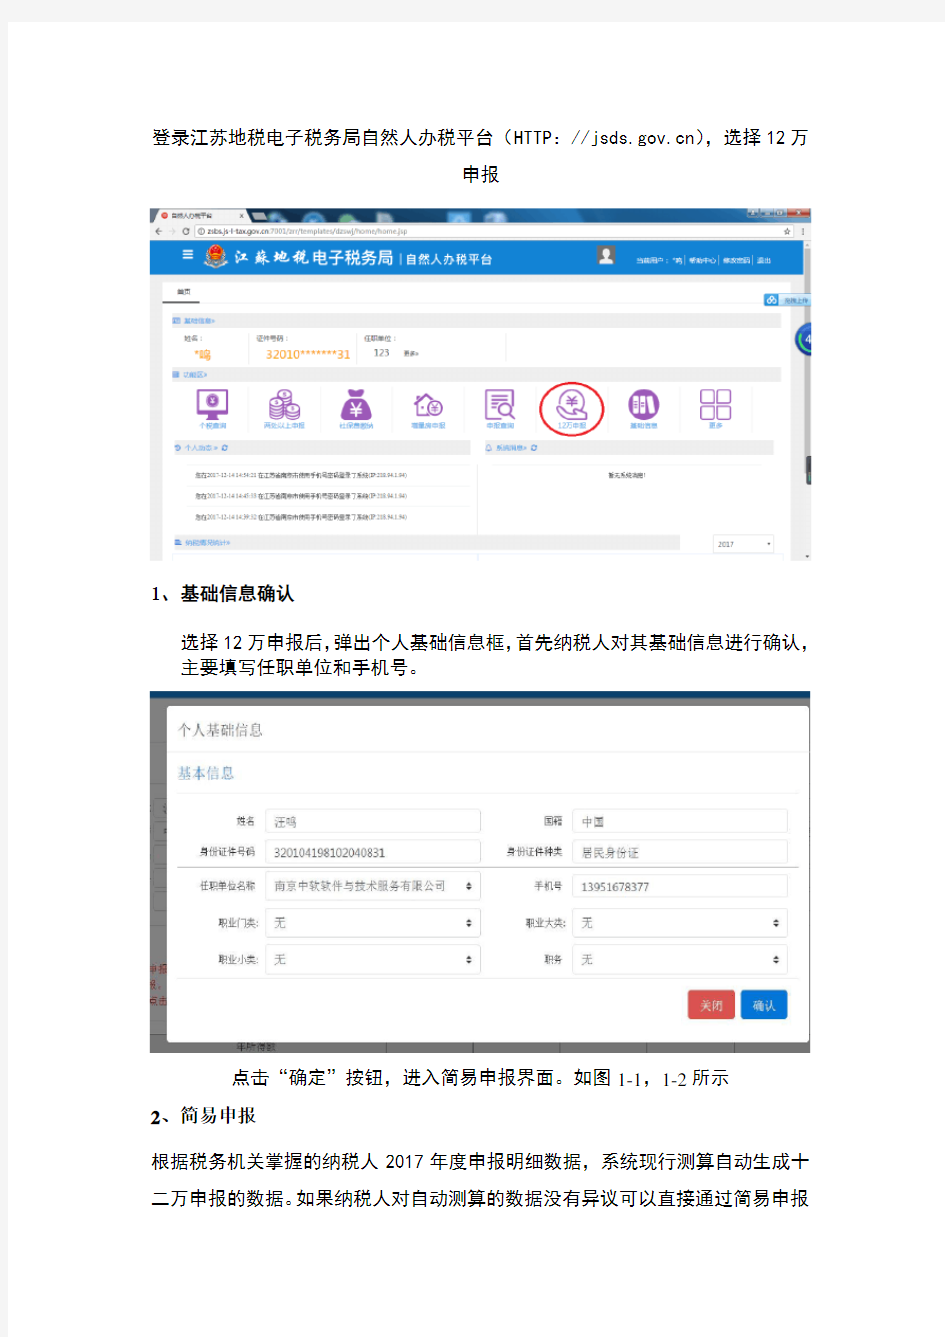 登录江苏地电子税务局自然人办税平台(HTTPjsds.gov